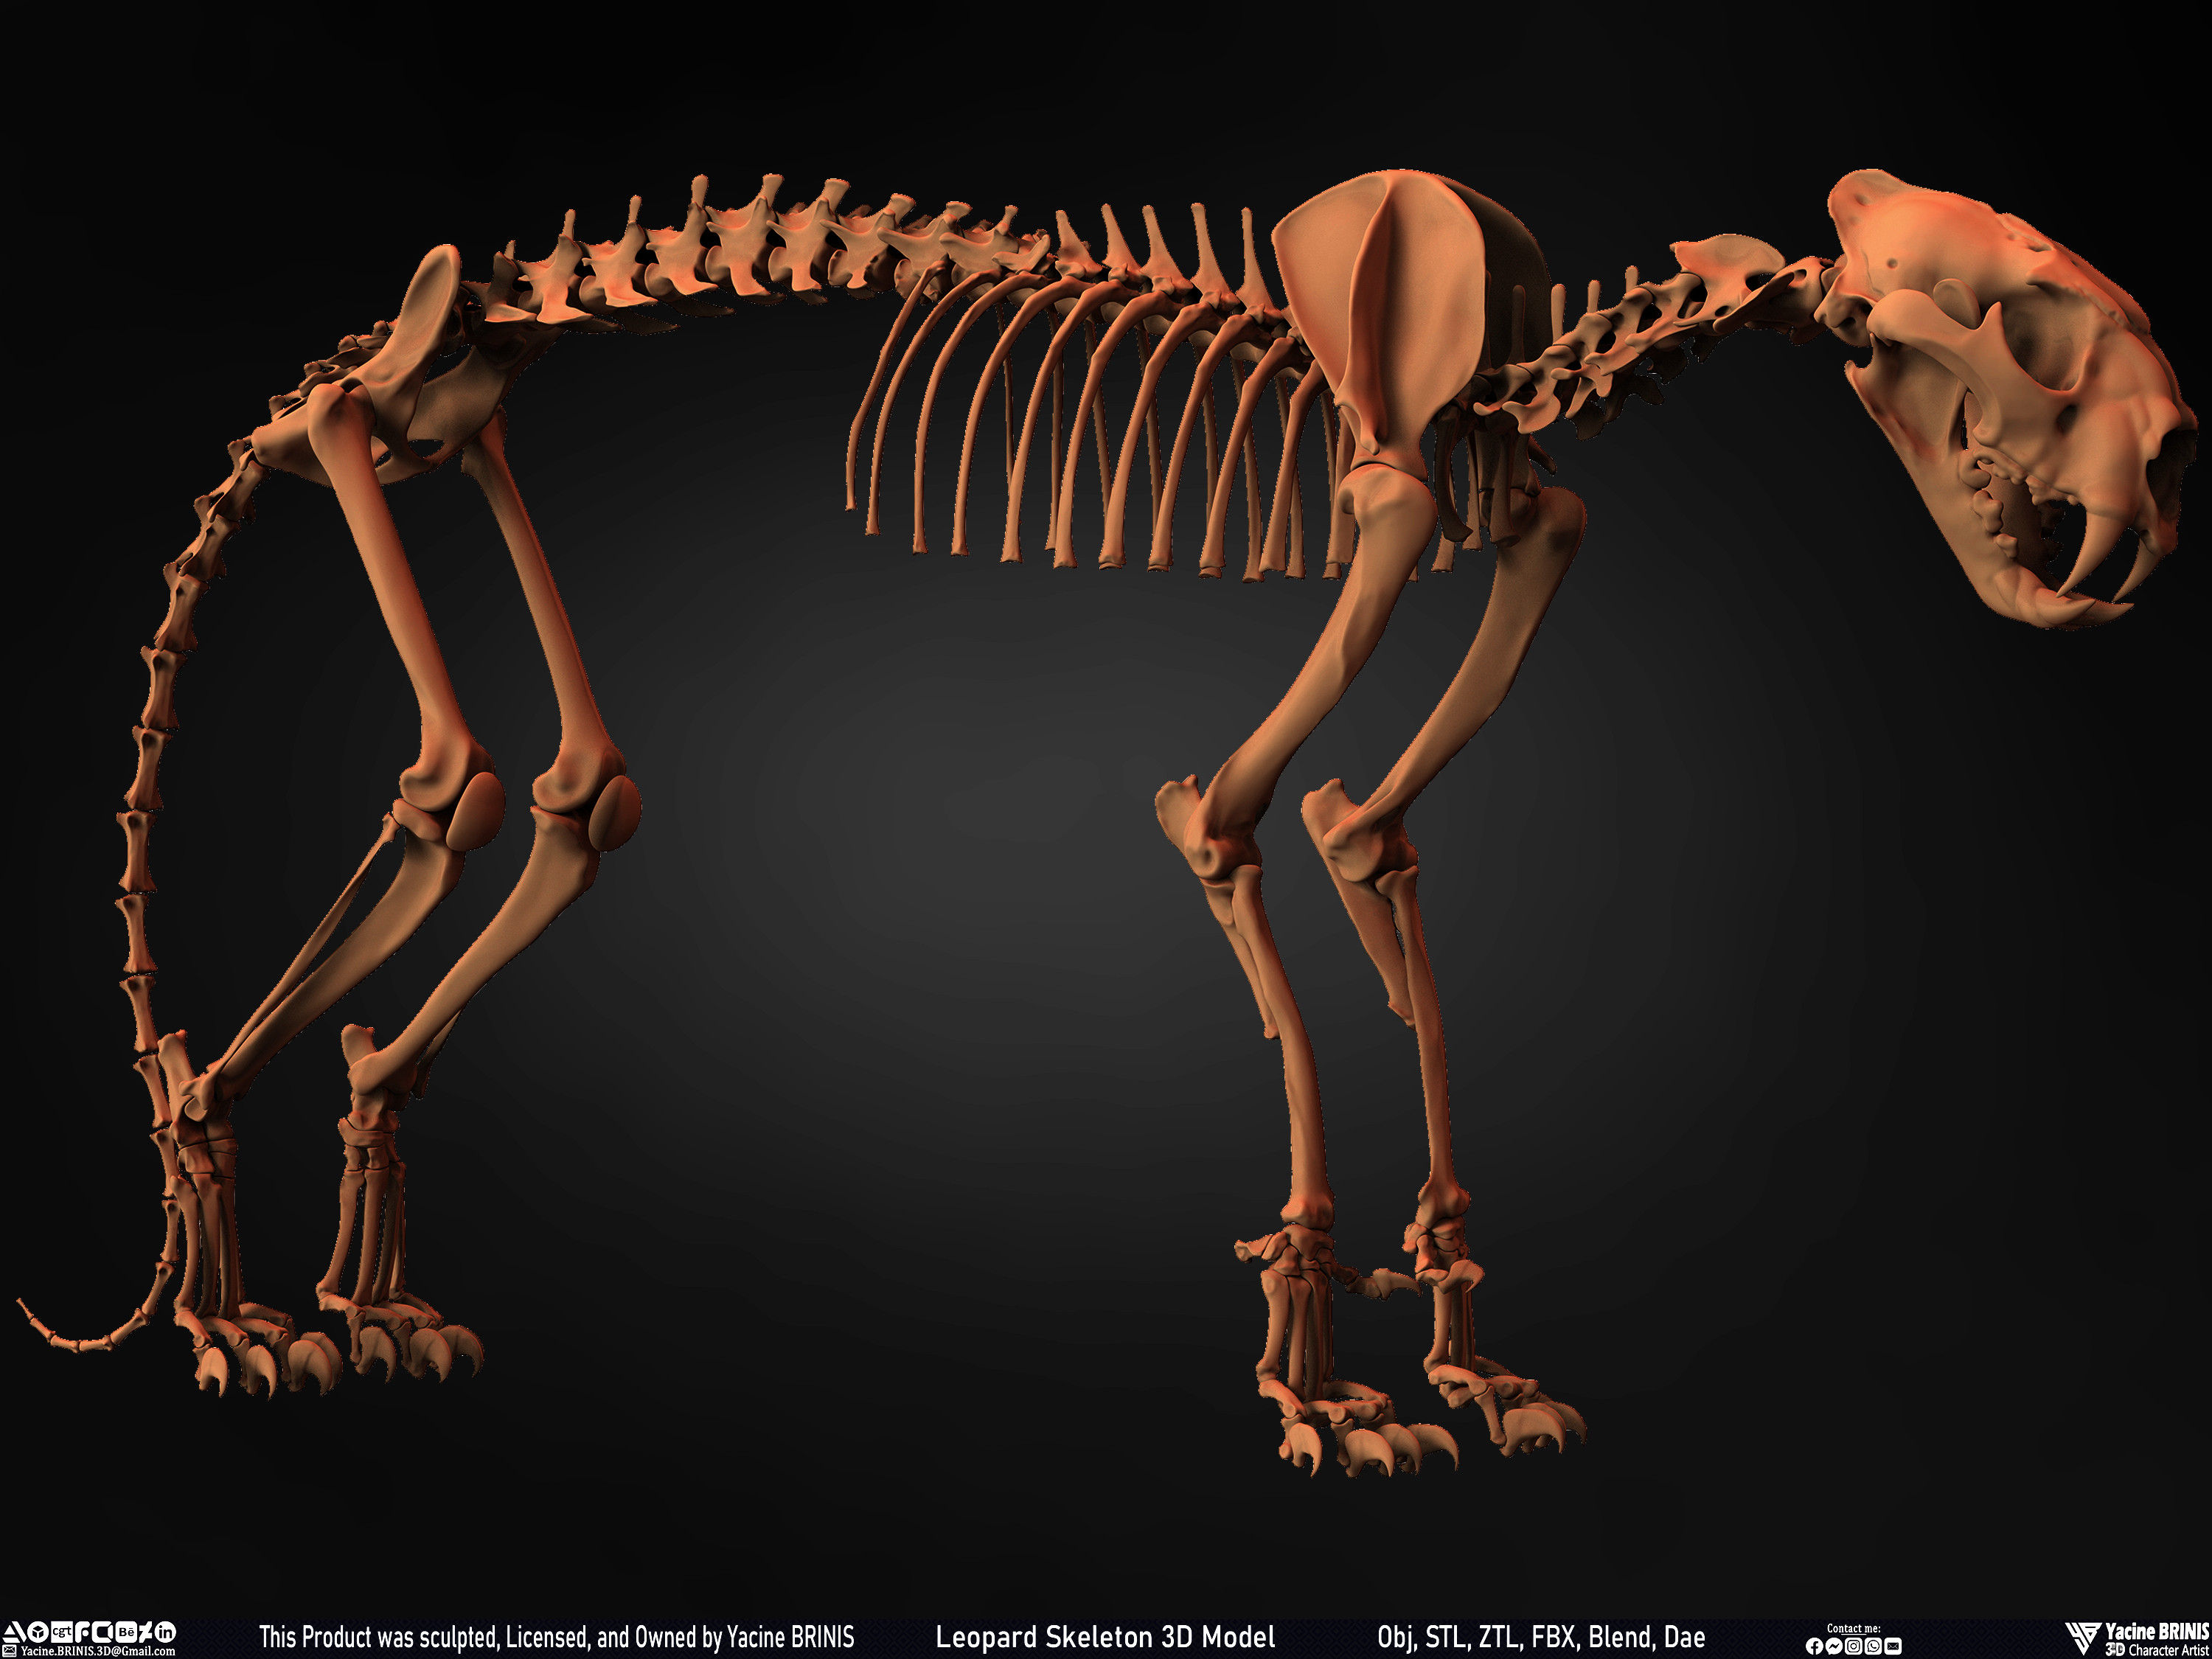 Leopard Skeleton 3D Model Sculpted By Yacine BRINIS 017